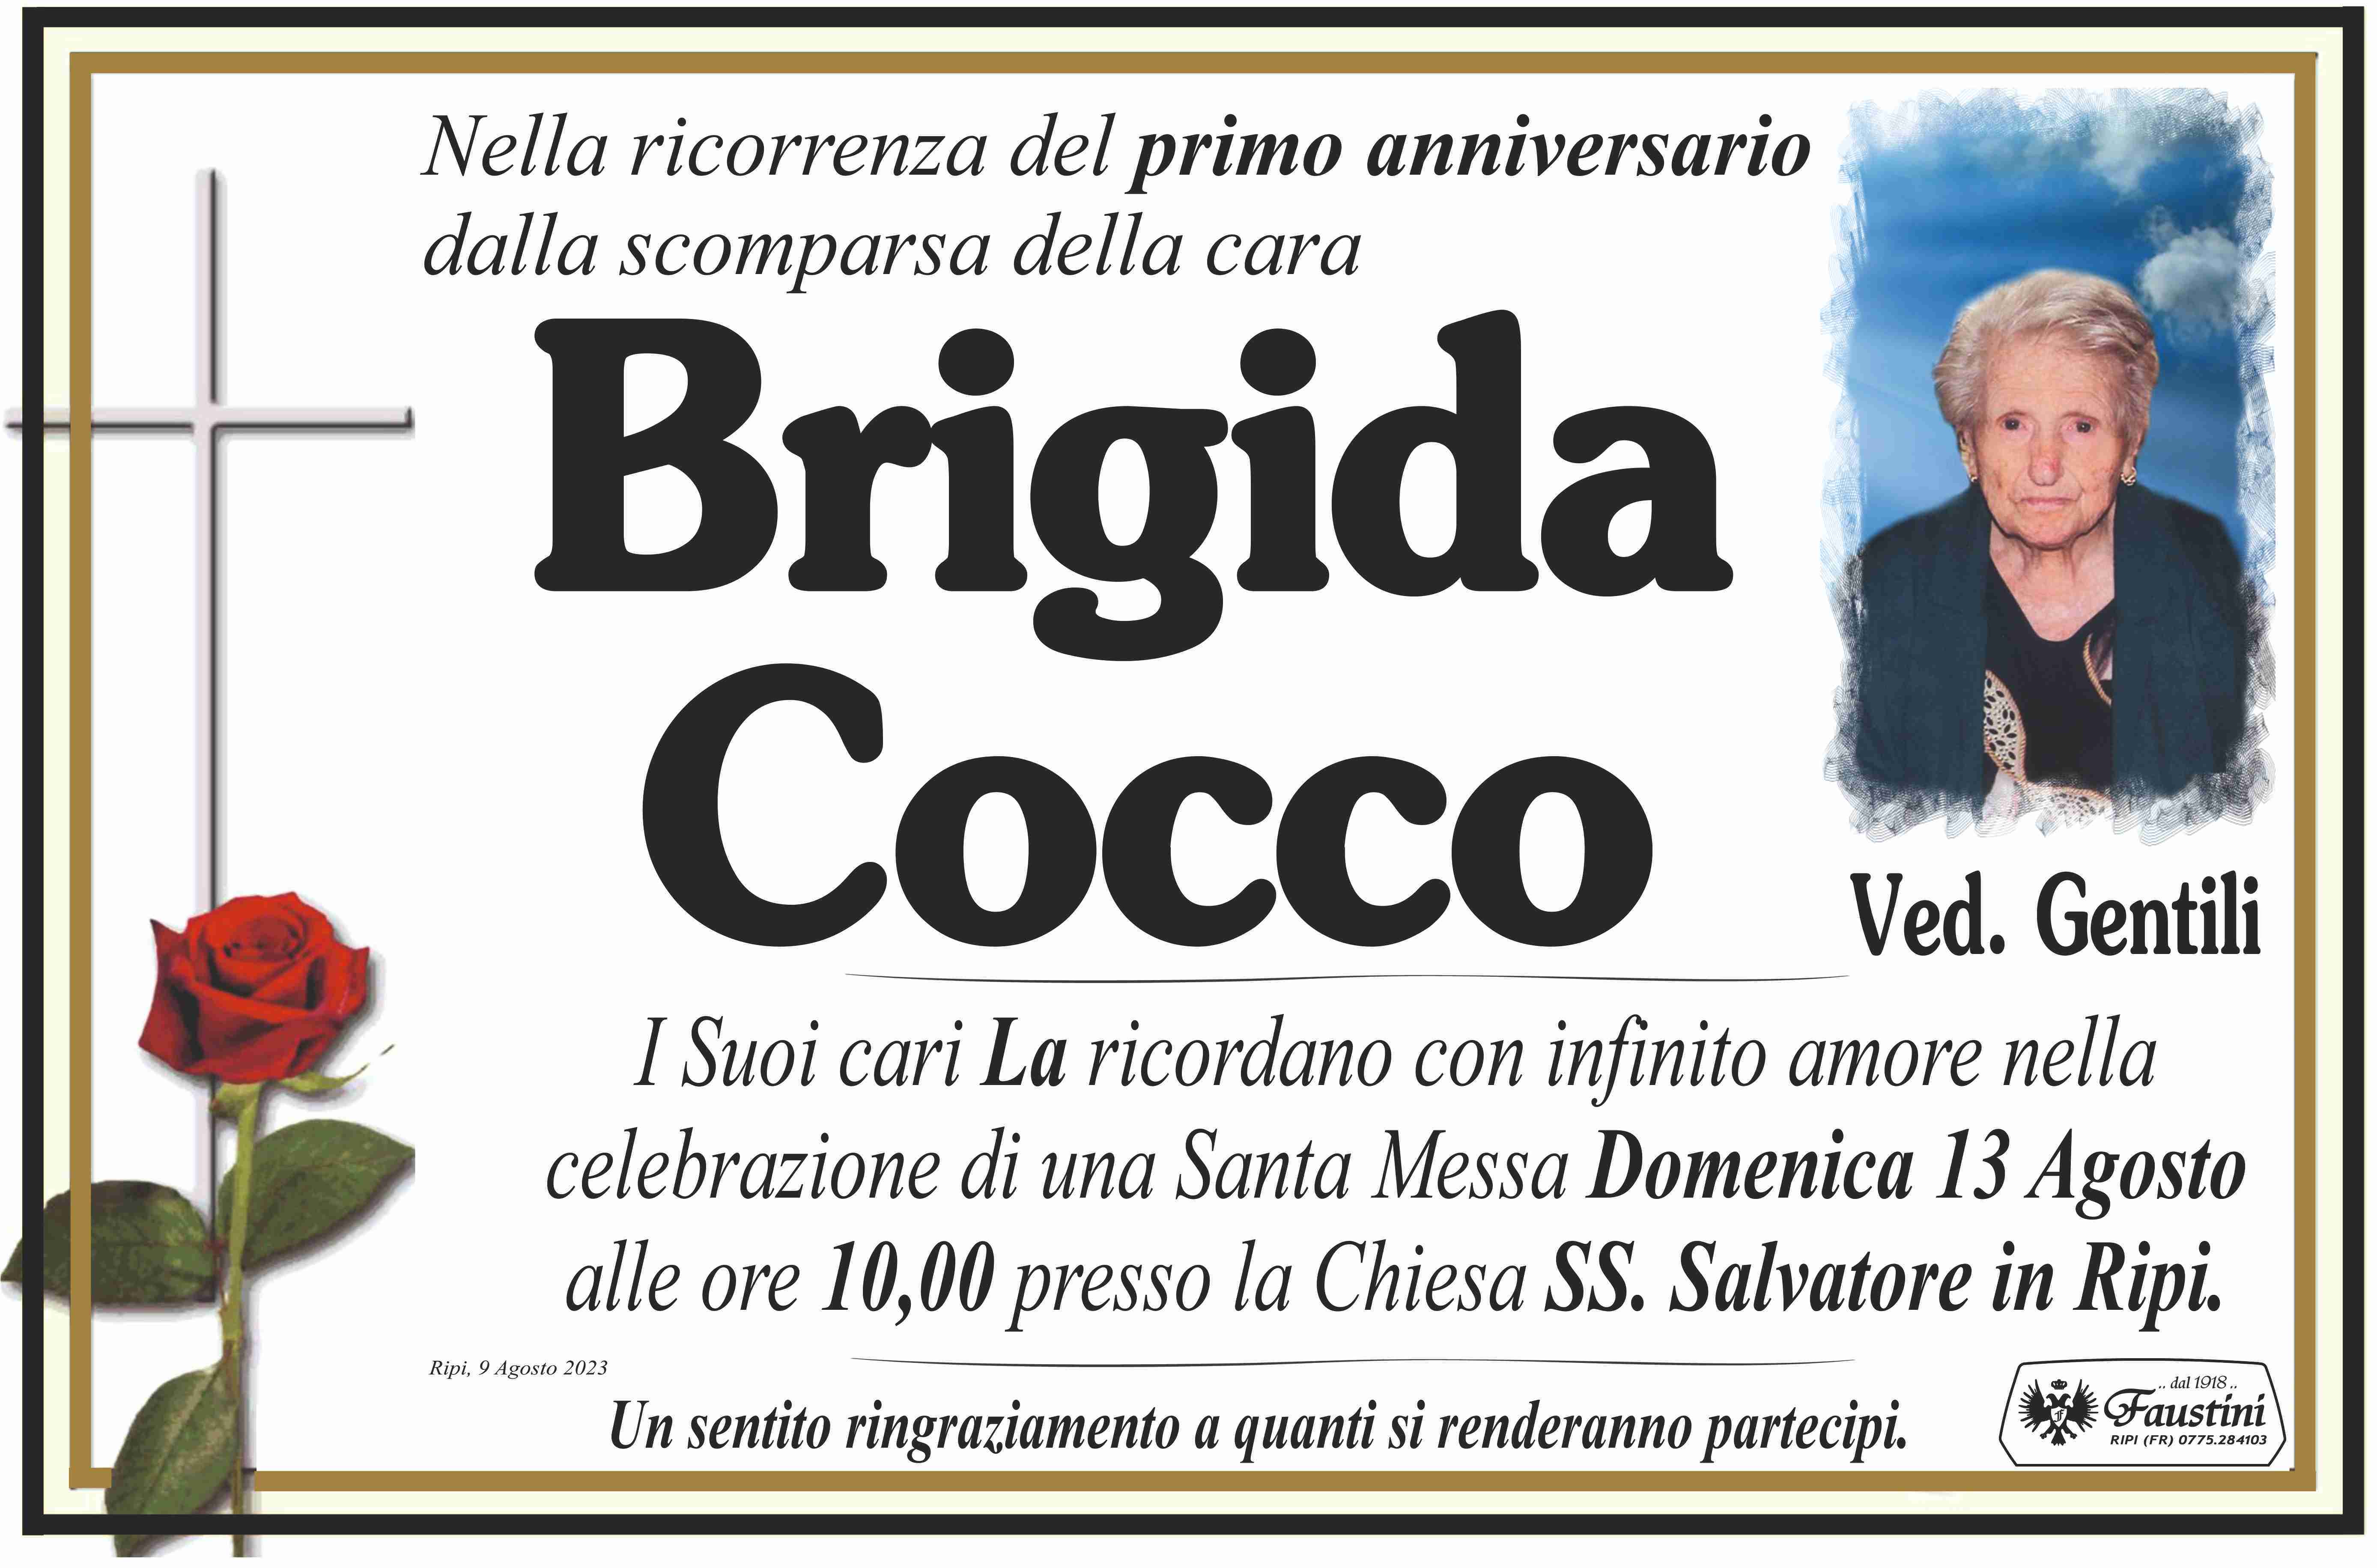 Brigida Cocco